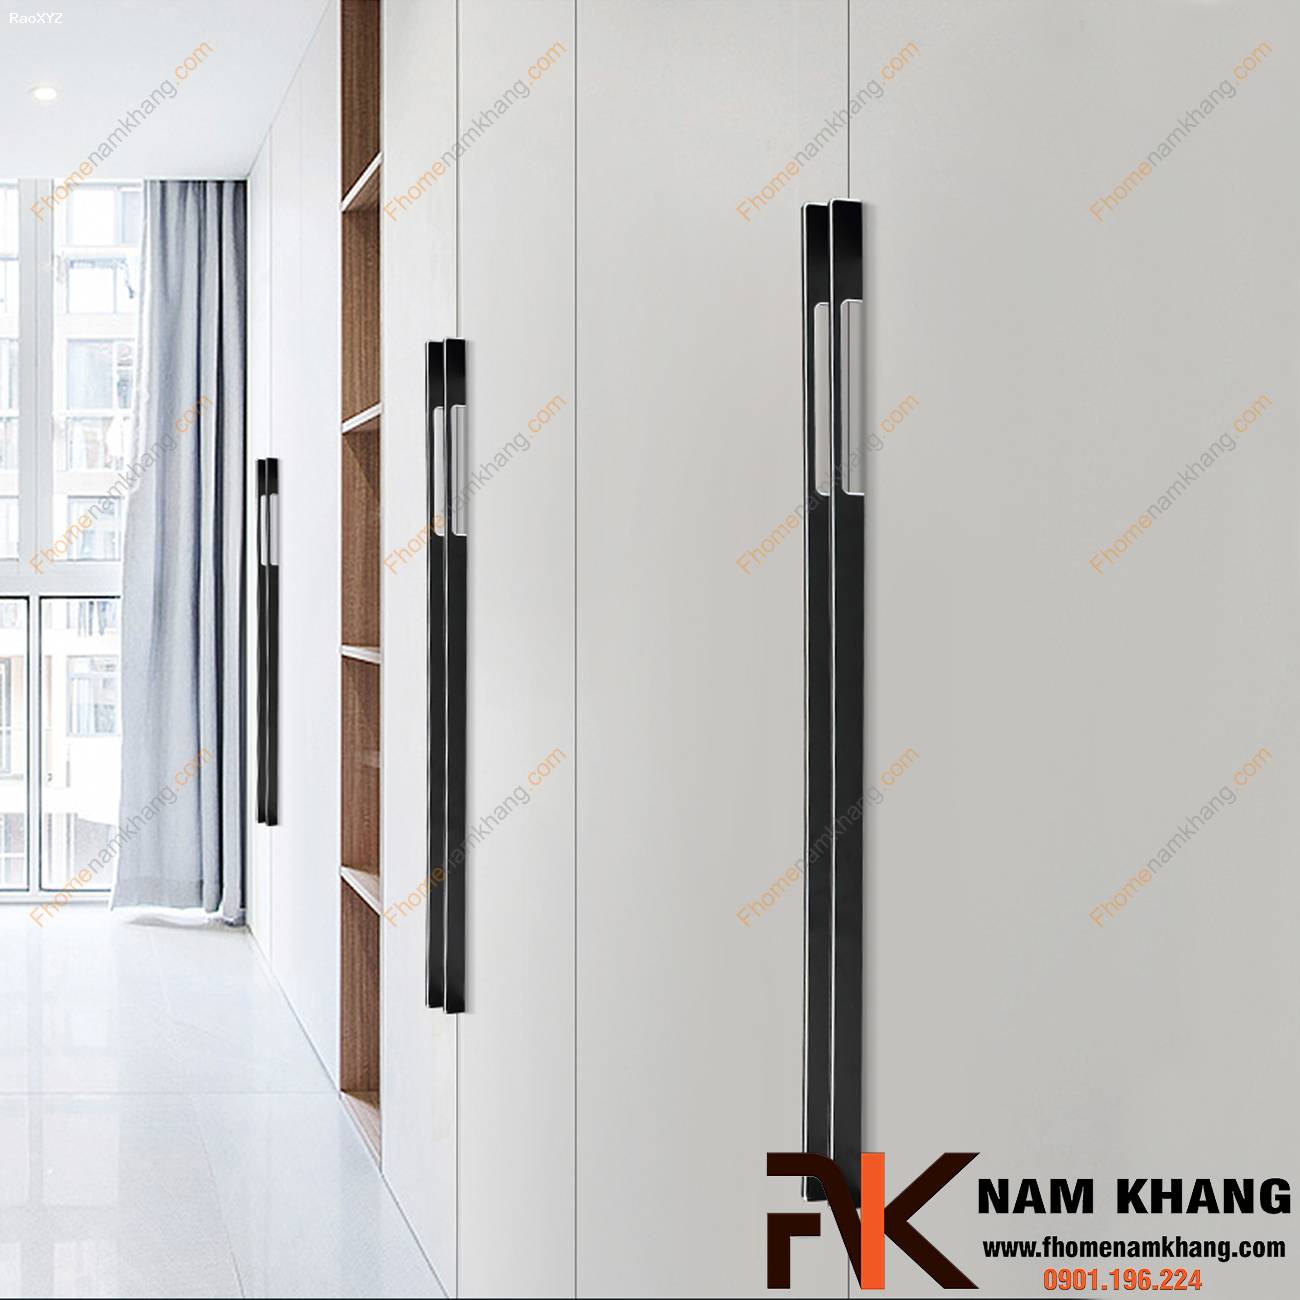 Tay nắm cửa tủ hiện đại cao cấp NK116S | F-Home NamKhang